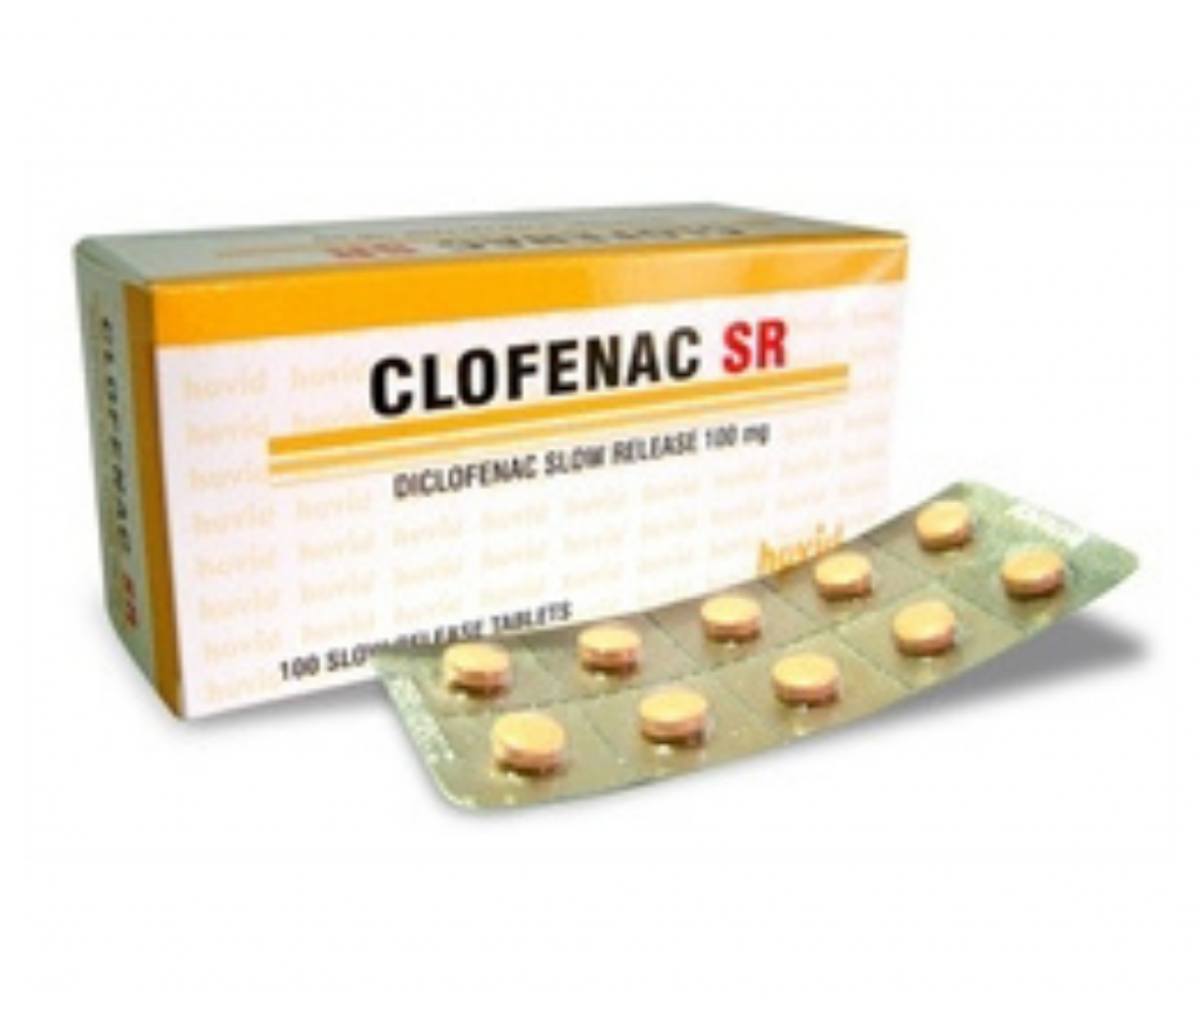 Clofenac SR 100mg Tablet - Hovid